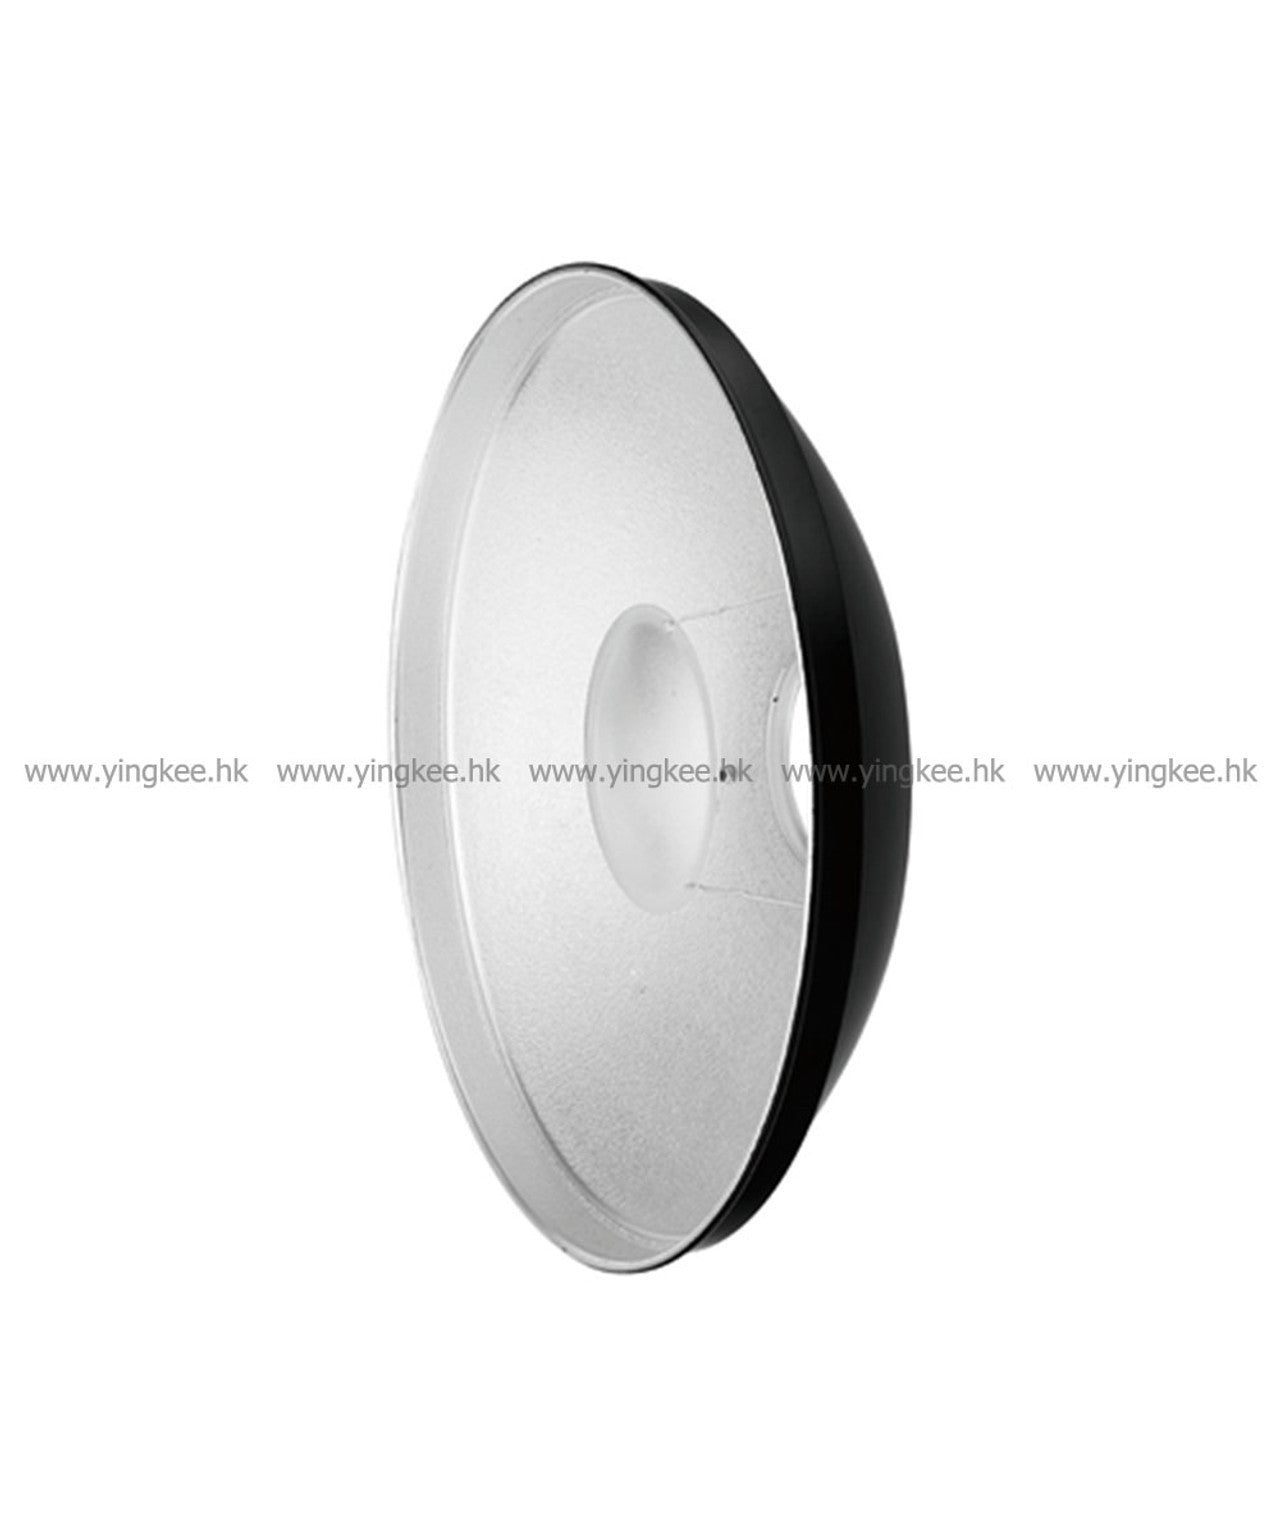 Jinbei 金貝 QZ-40 Beauty Dish 銀色雷達罩